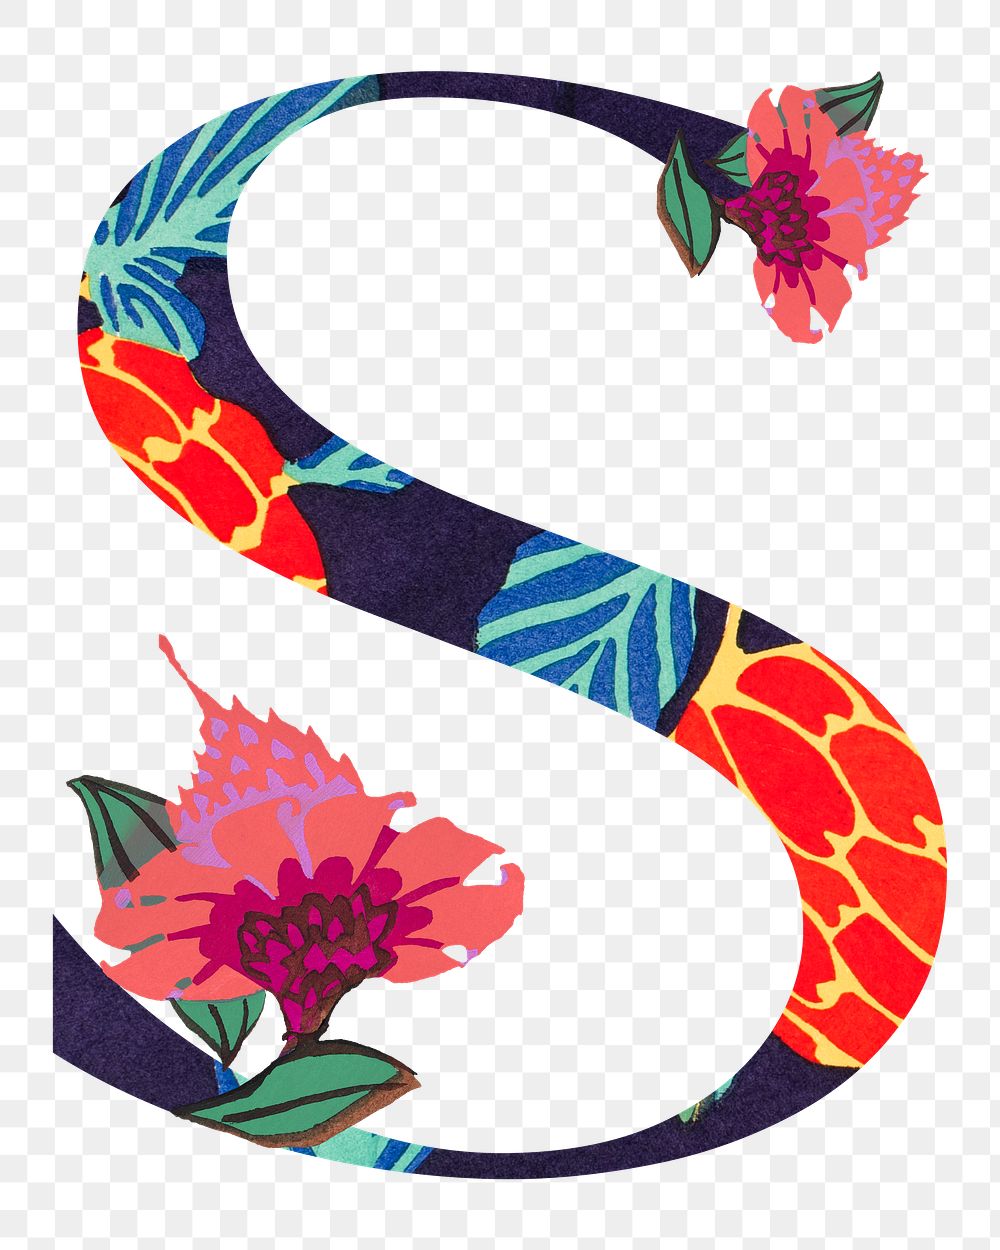 Letter S PNG in Seguy Papillons art alphabet illustration, transparent background